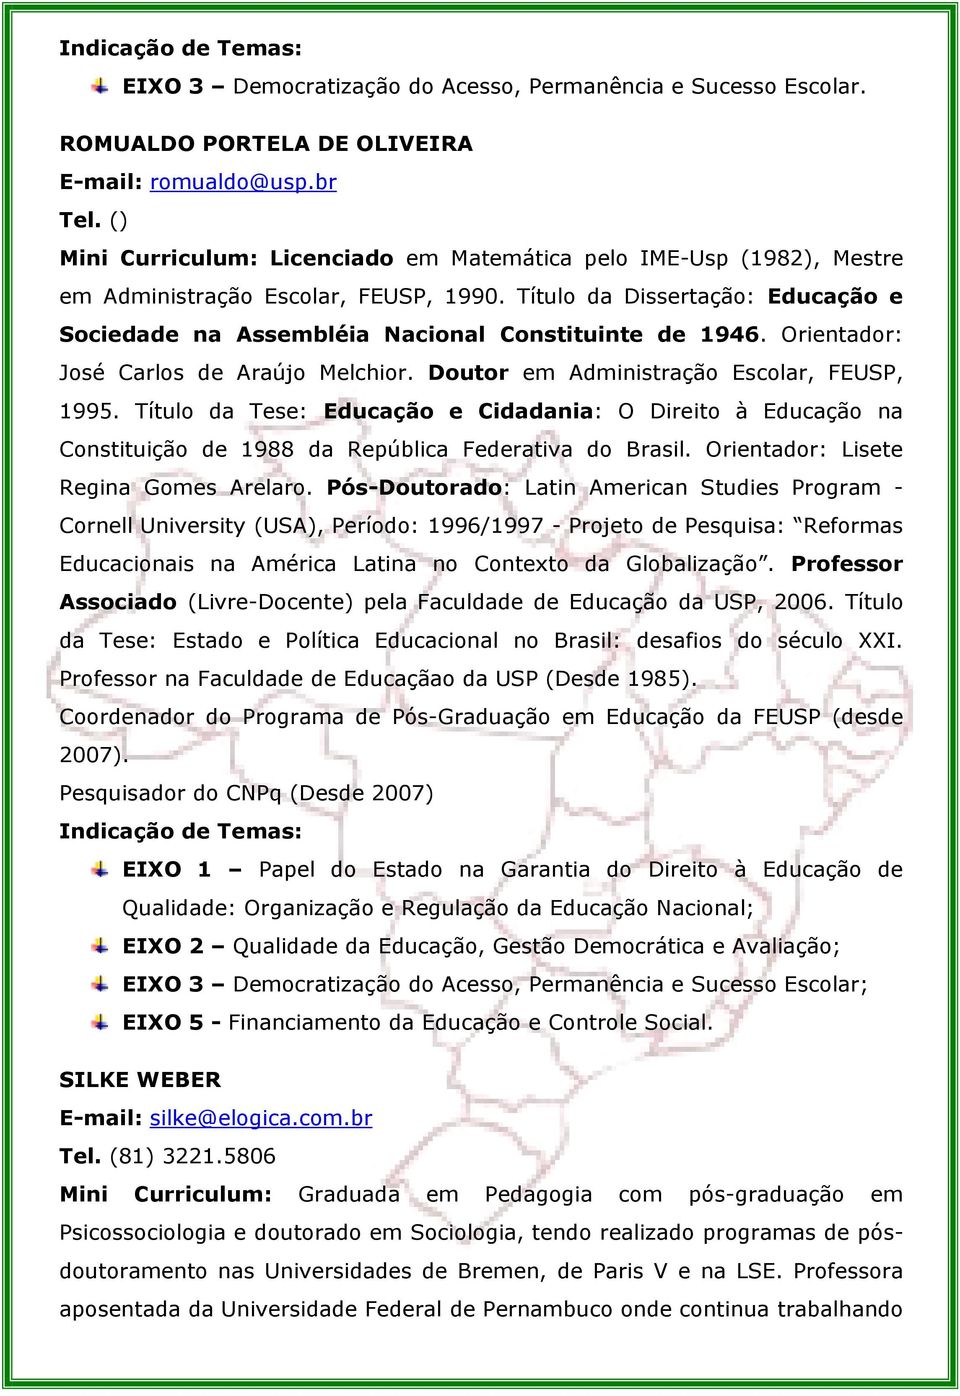 Orientador: José Carlos de Araújo Melchior. Doutor em Administração Escolar, FEUSP, 1995.